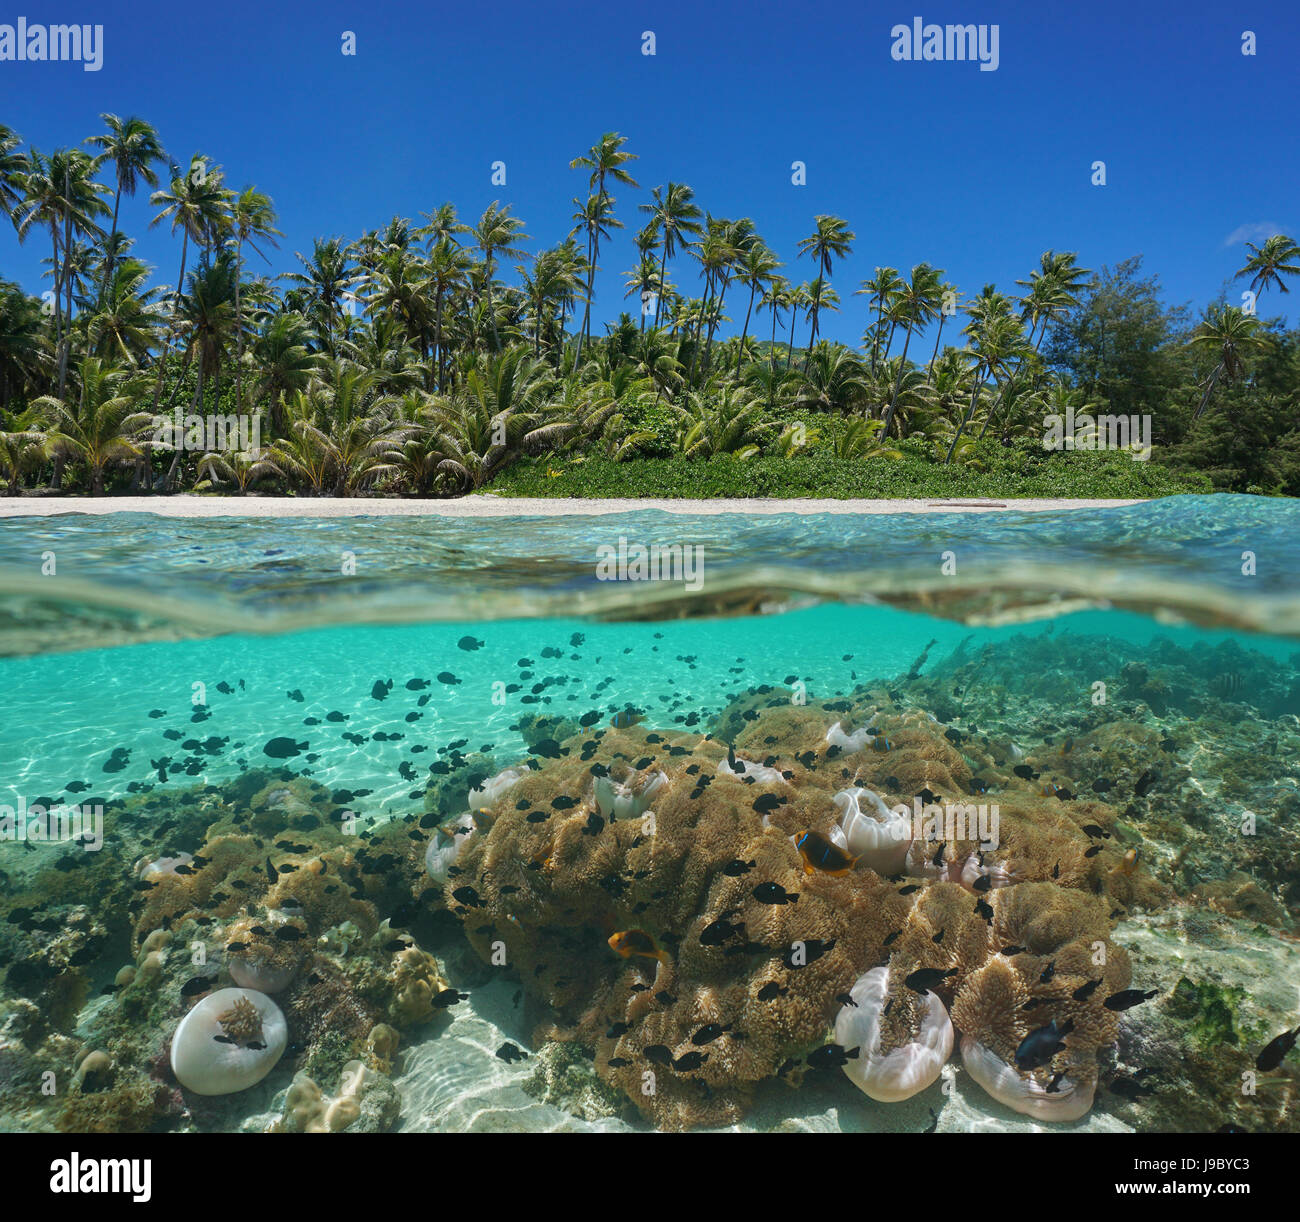 Spiaggia tropicale al di sopra e al di sotto della superficie dell'acqua con palme da cocco e molti anemoni di mare con pesce subacquea, Huahine, oceano pacifico, Polinesia Francese Foto Stock